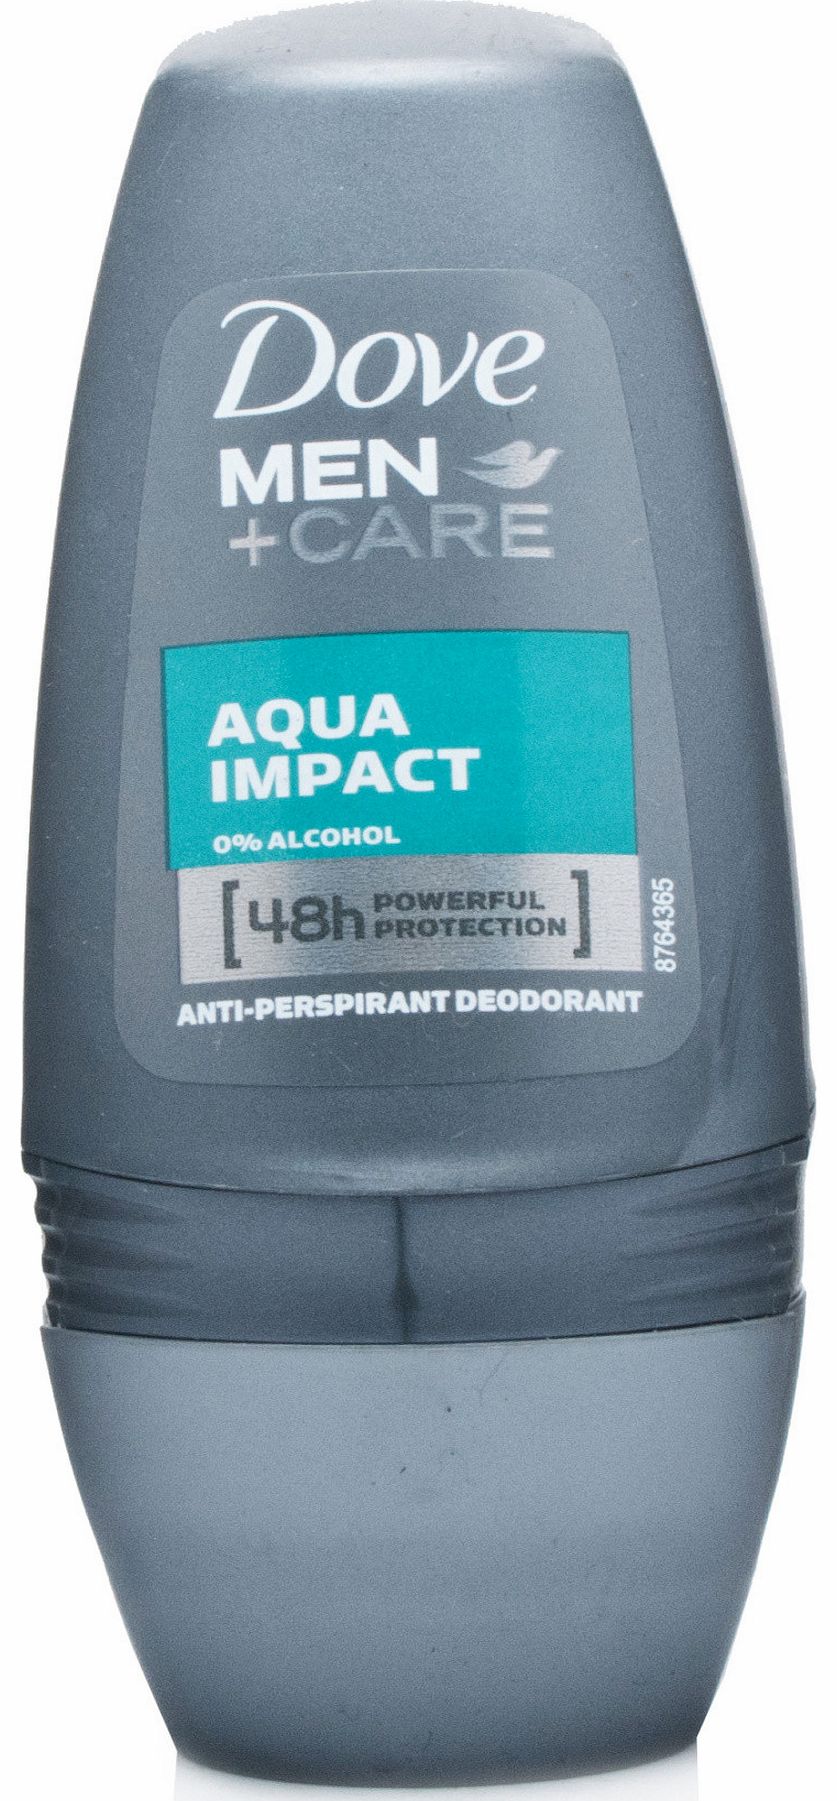 Men+Care Aqua Impact Anti-Perspirant